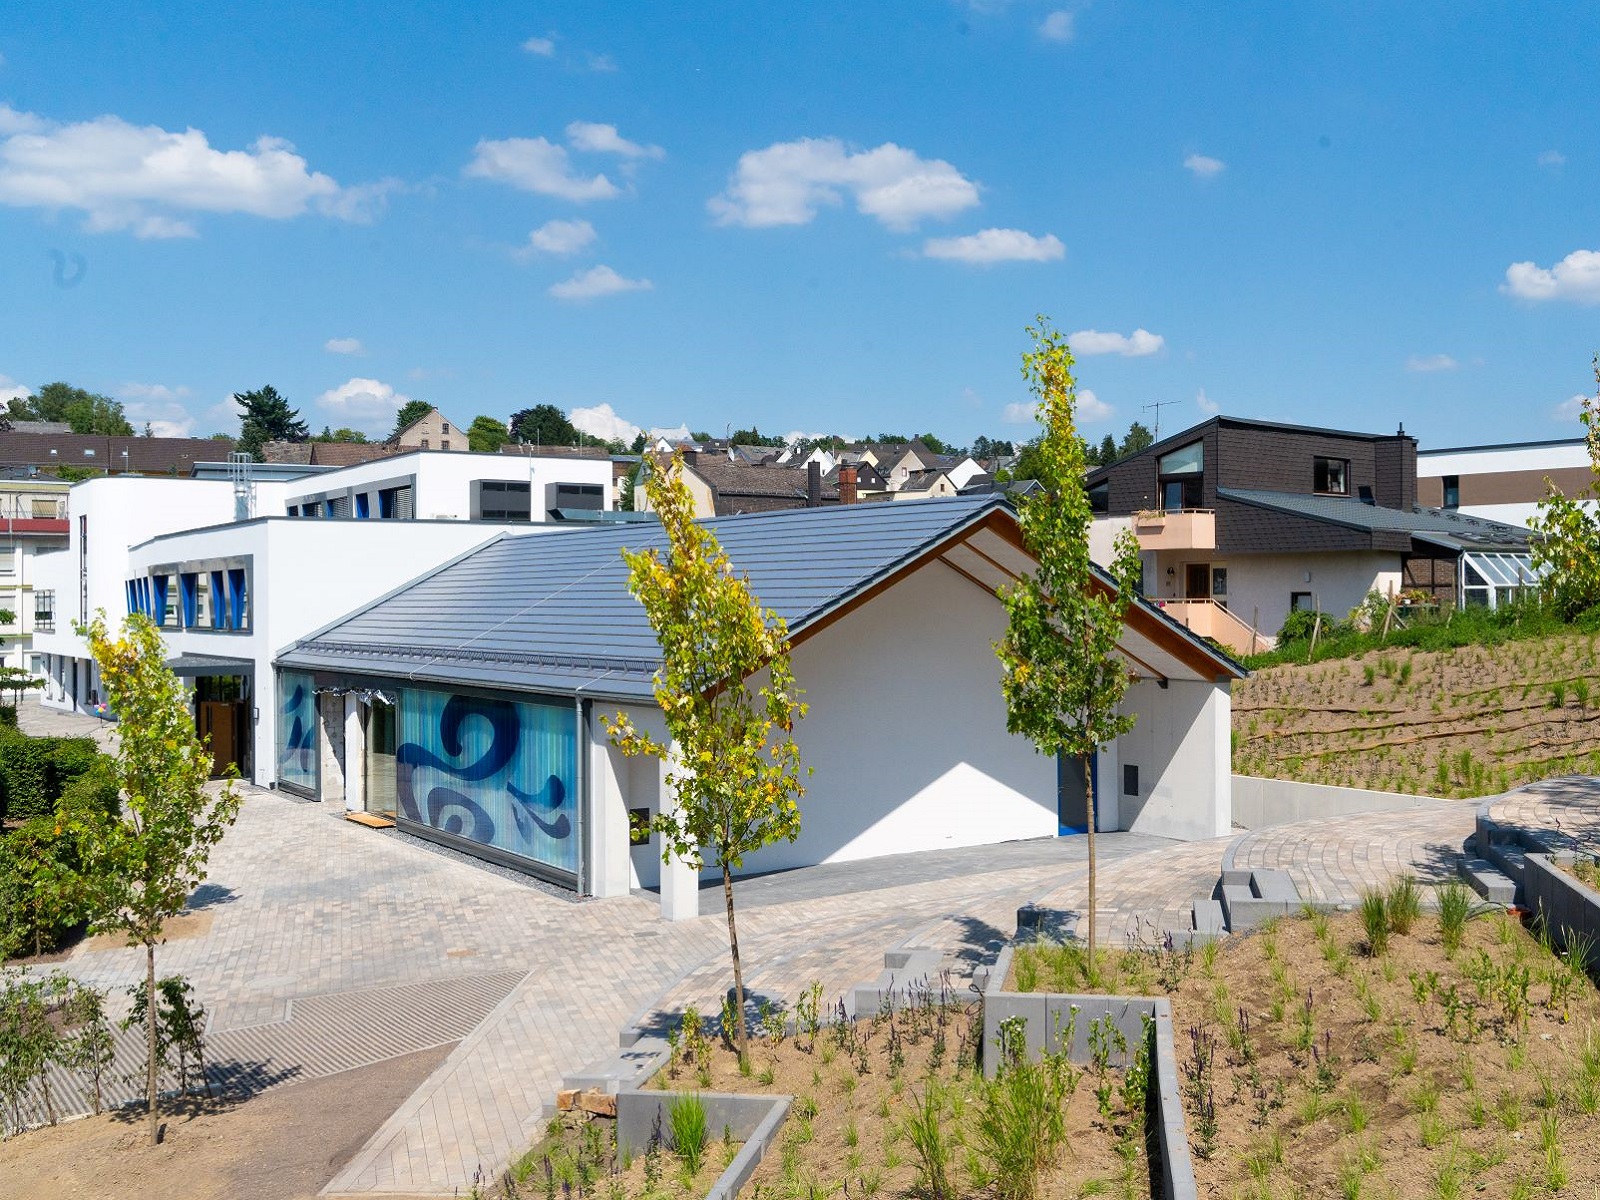 Jugend- und Kulturzentrum "Zweite Heimat" in Hhr-Grenzhausen feierlich eingeweiht